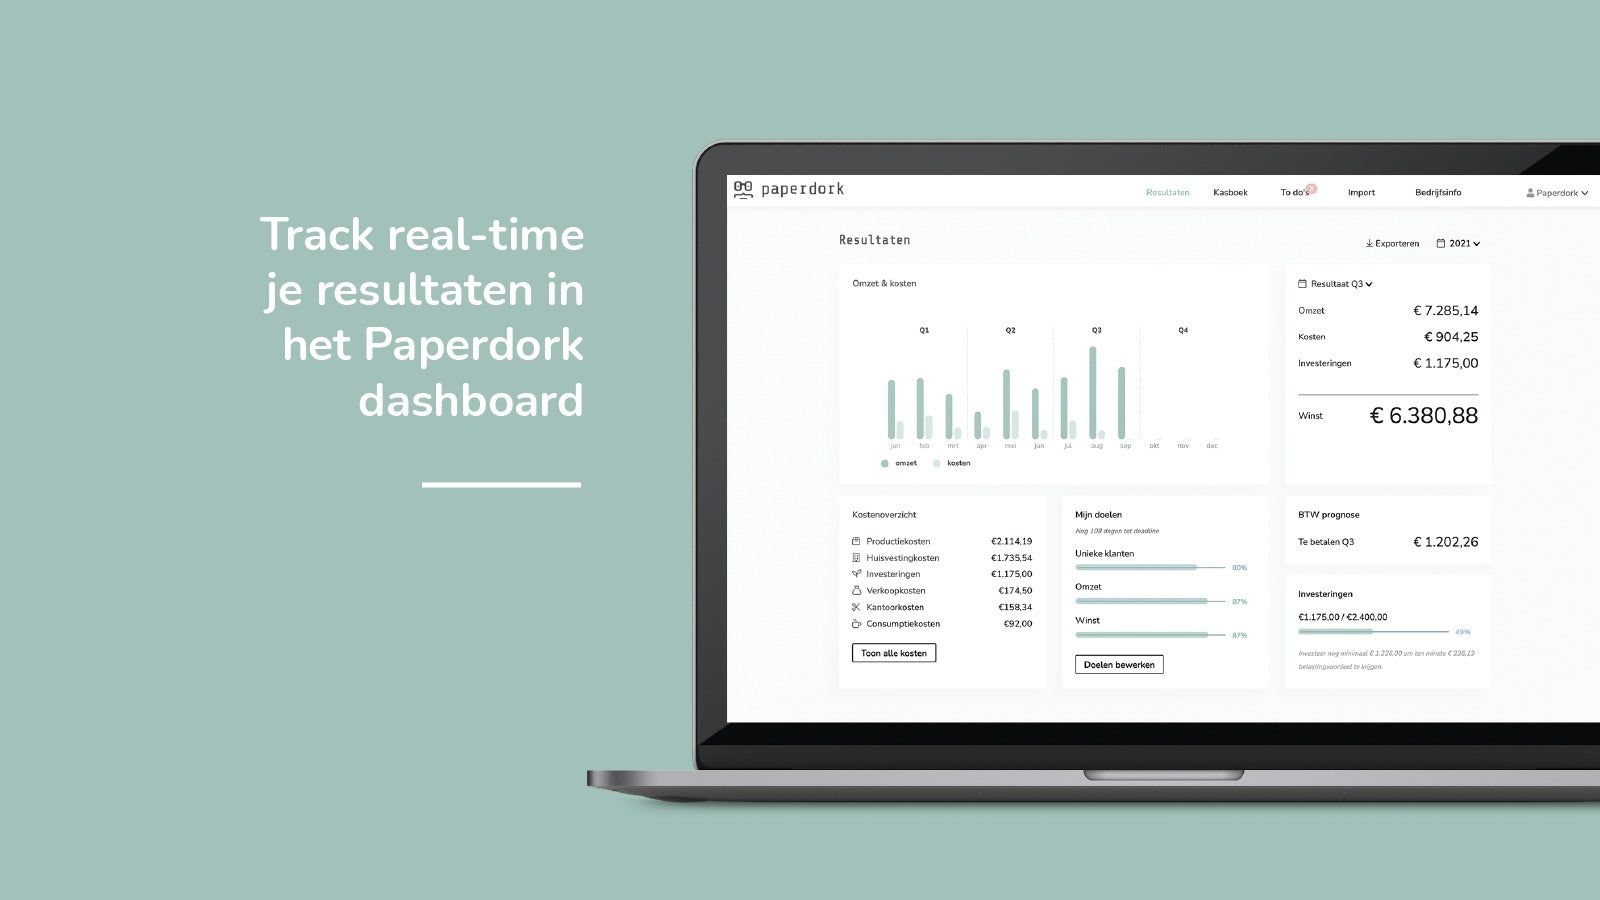 Track real-time je resultaten in het Paperdork dashboard